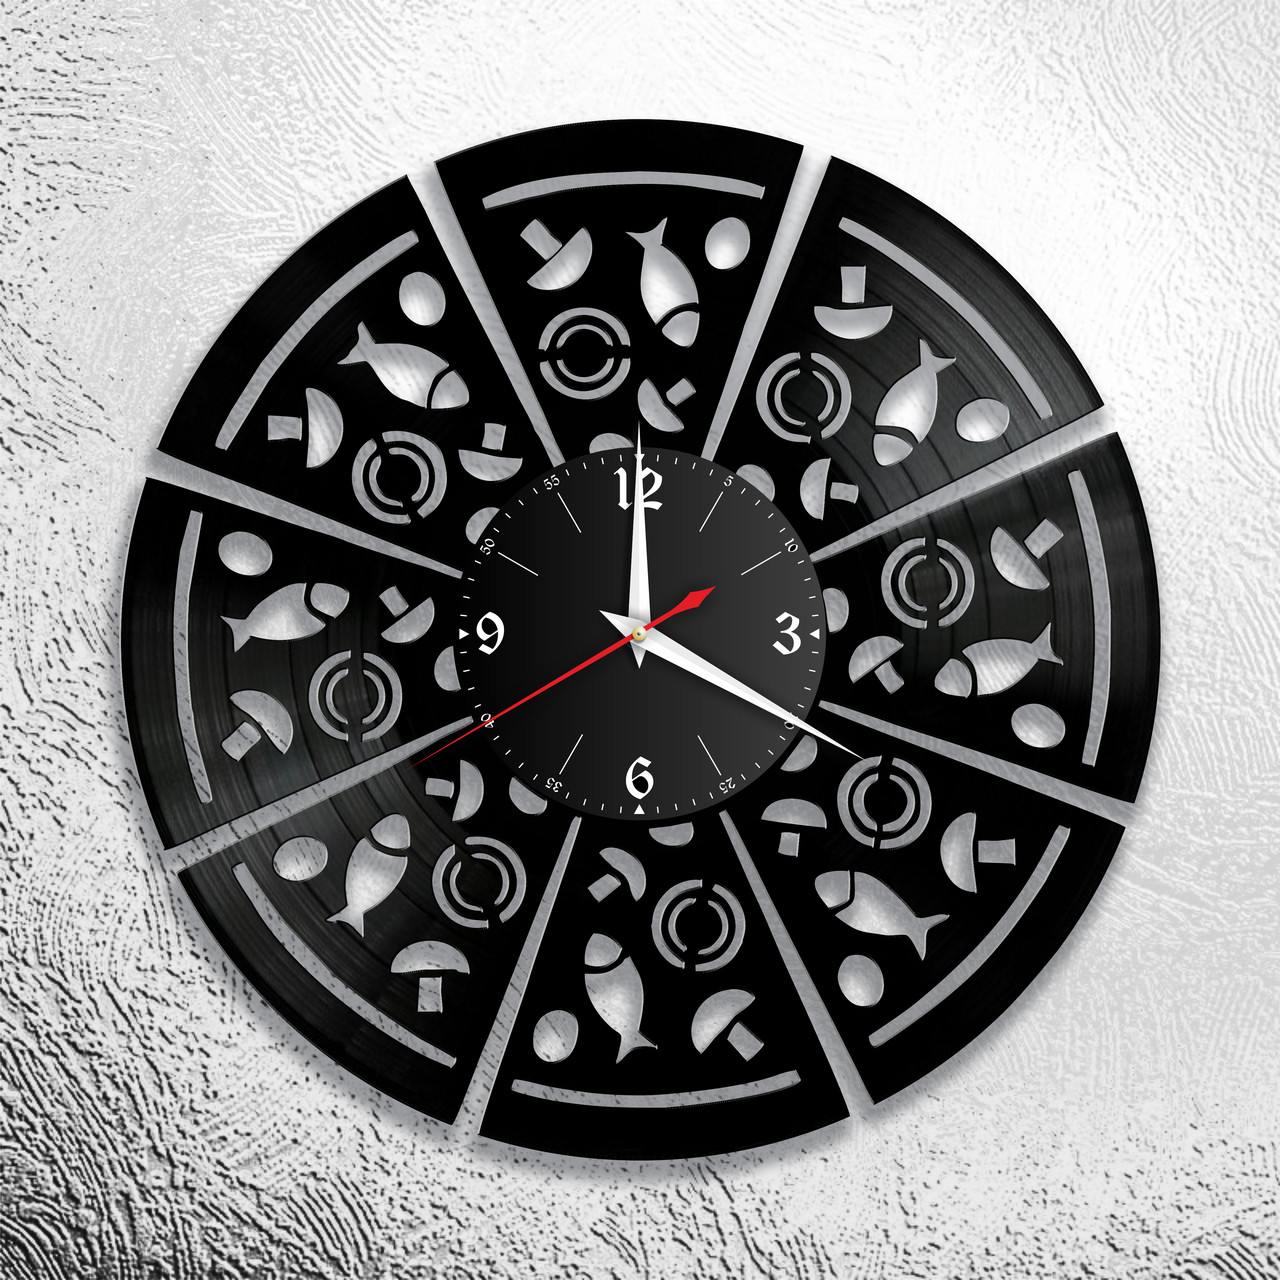 Оригинальные часы из виниловых пластинок "Пиццерия" Версия 1